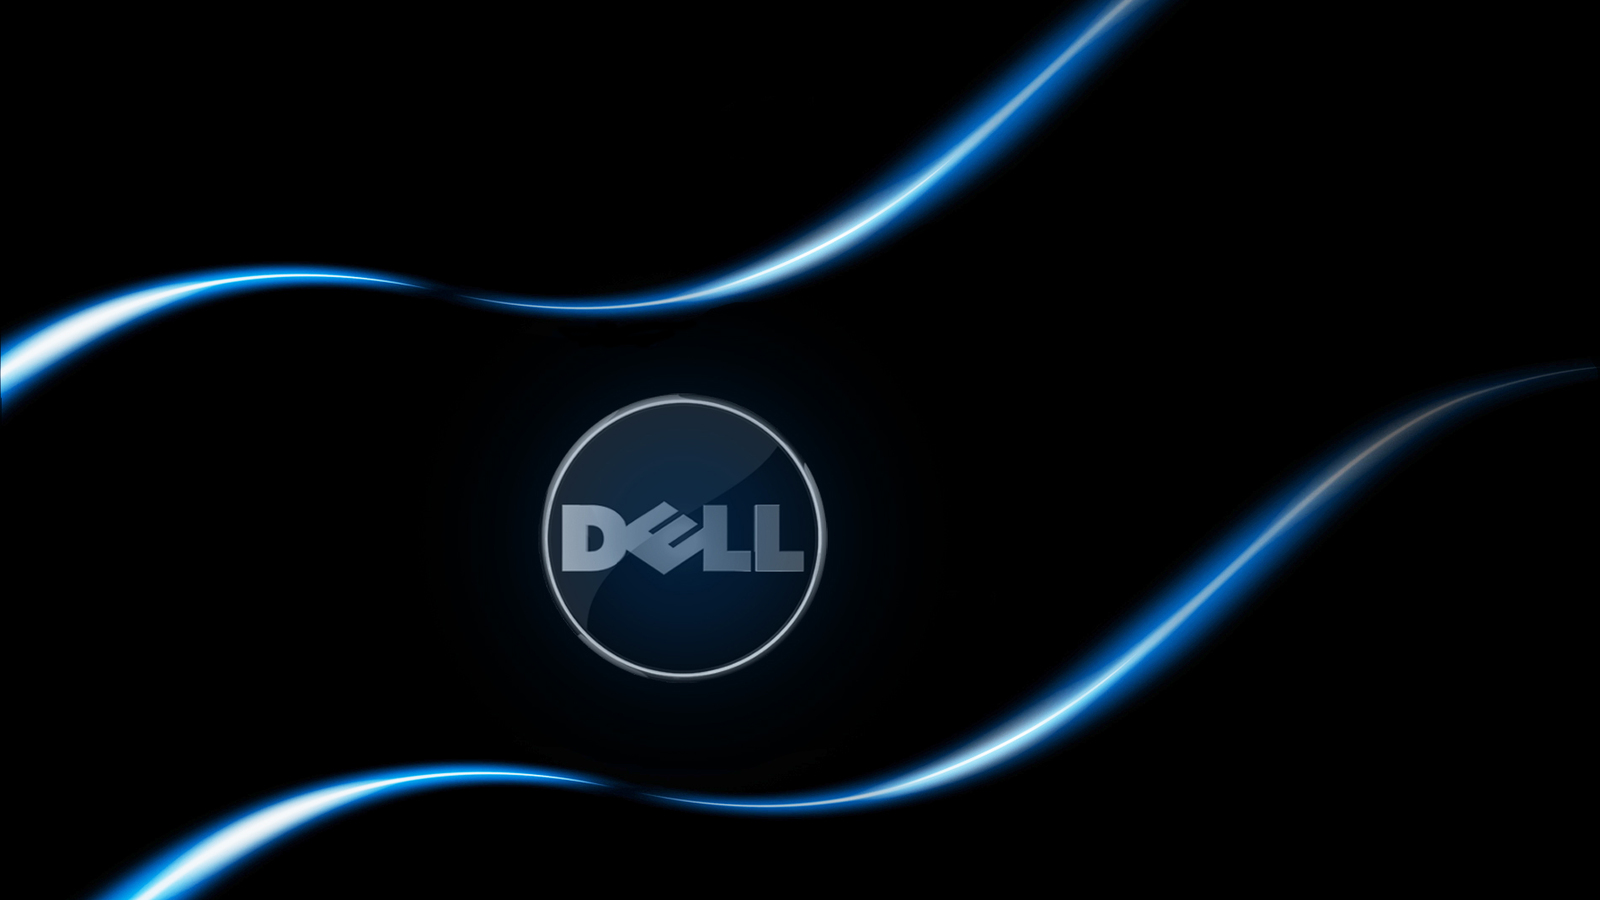 Tận hưởng chất lượng hình ảnh HD rực rỡ với hình nền Dell đẹp mắt. Sự kết hợp giữa độ phân giải cao và thiết kế tinh tế của máy tính Dell sẽ khiến cho các bức ảnh nền này trở nên sống động hơn với màu sắc rực rỡ.